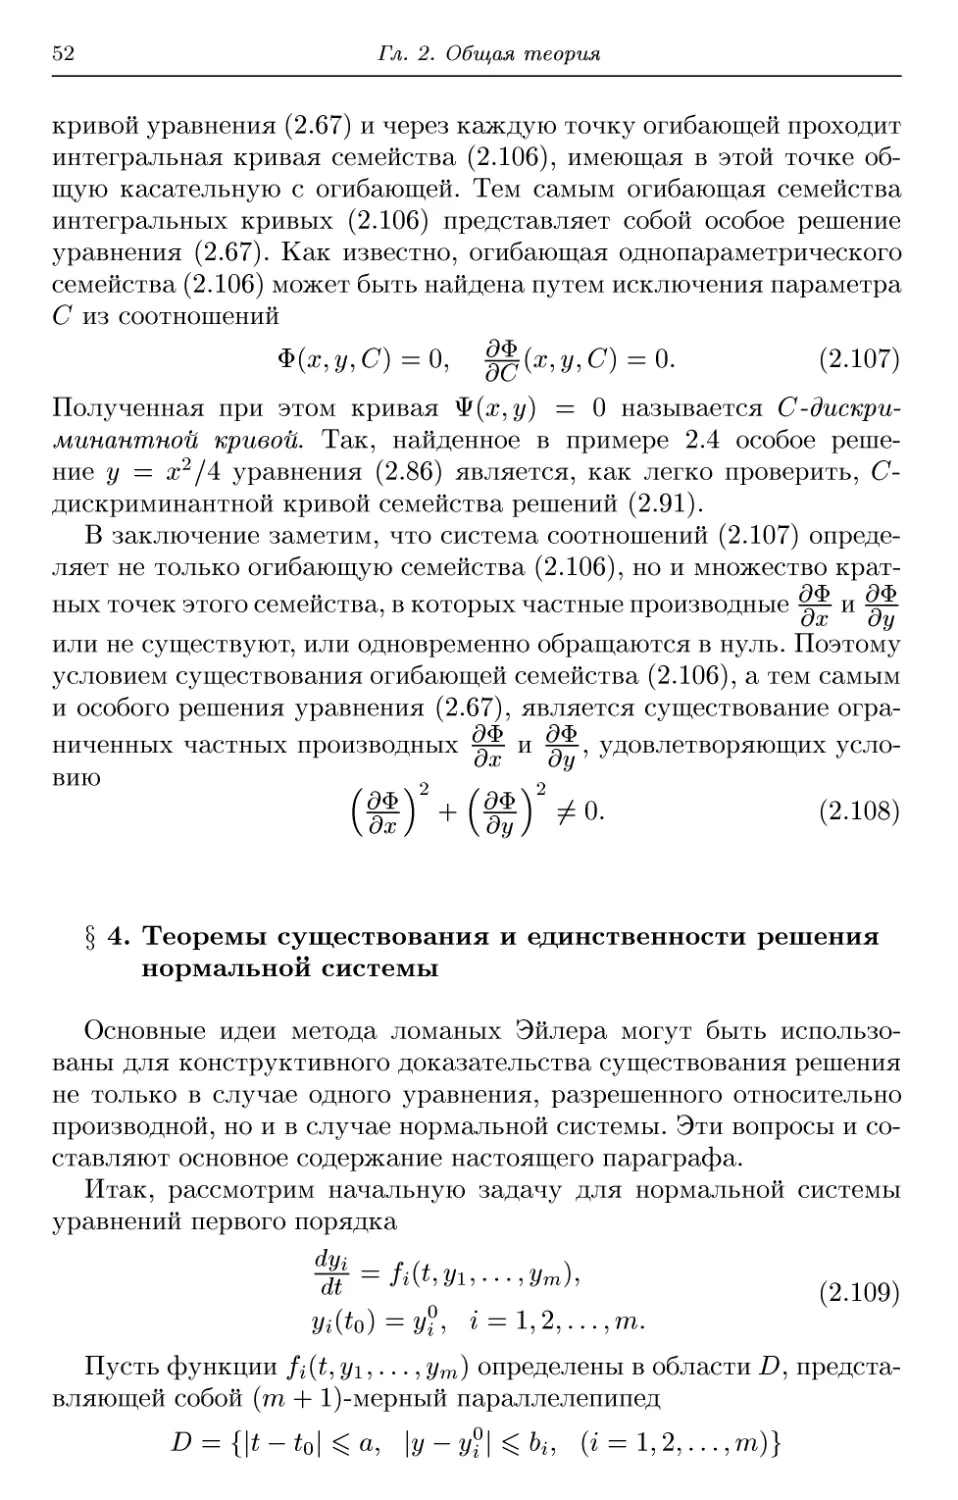 § 4. Теоремы существования и единственности решения нормальной системы